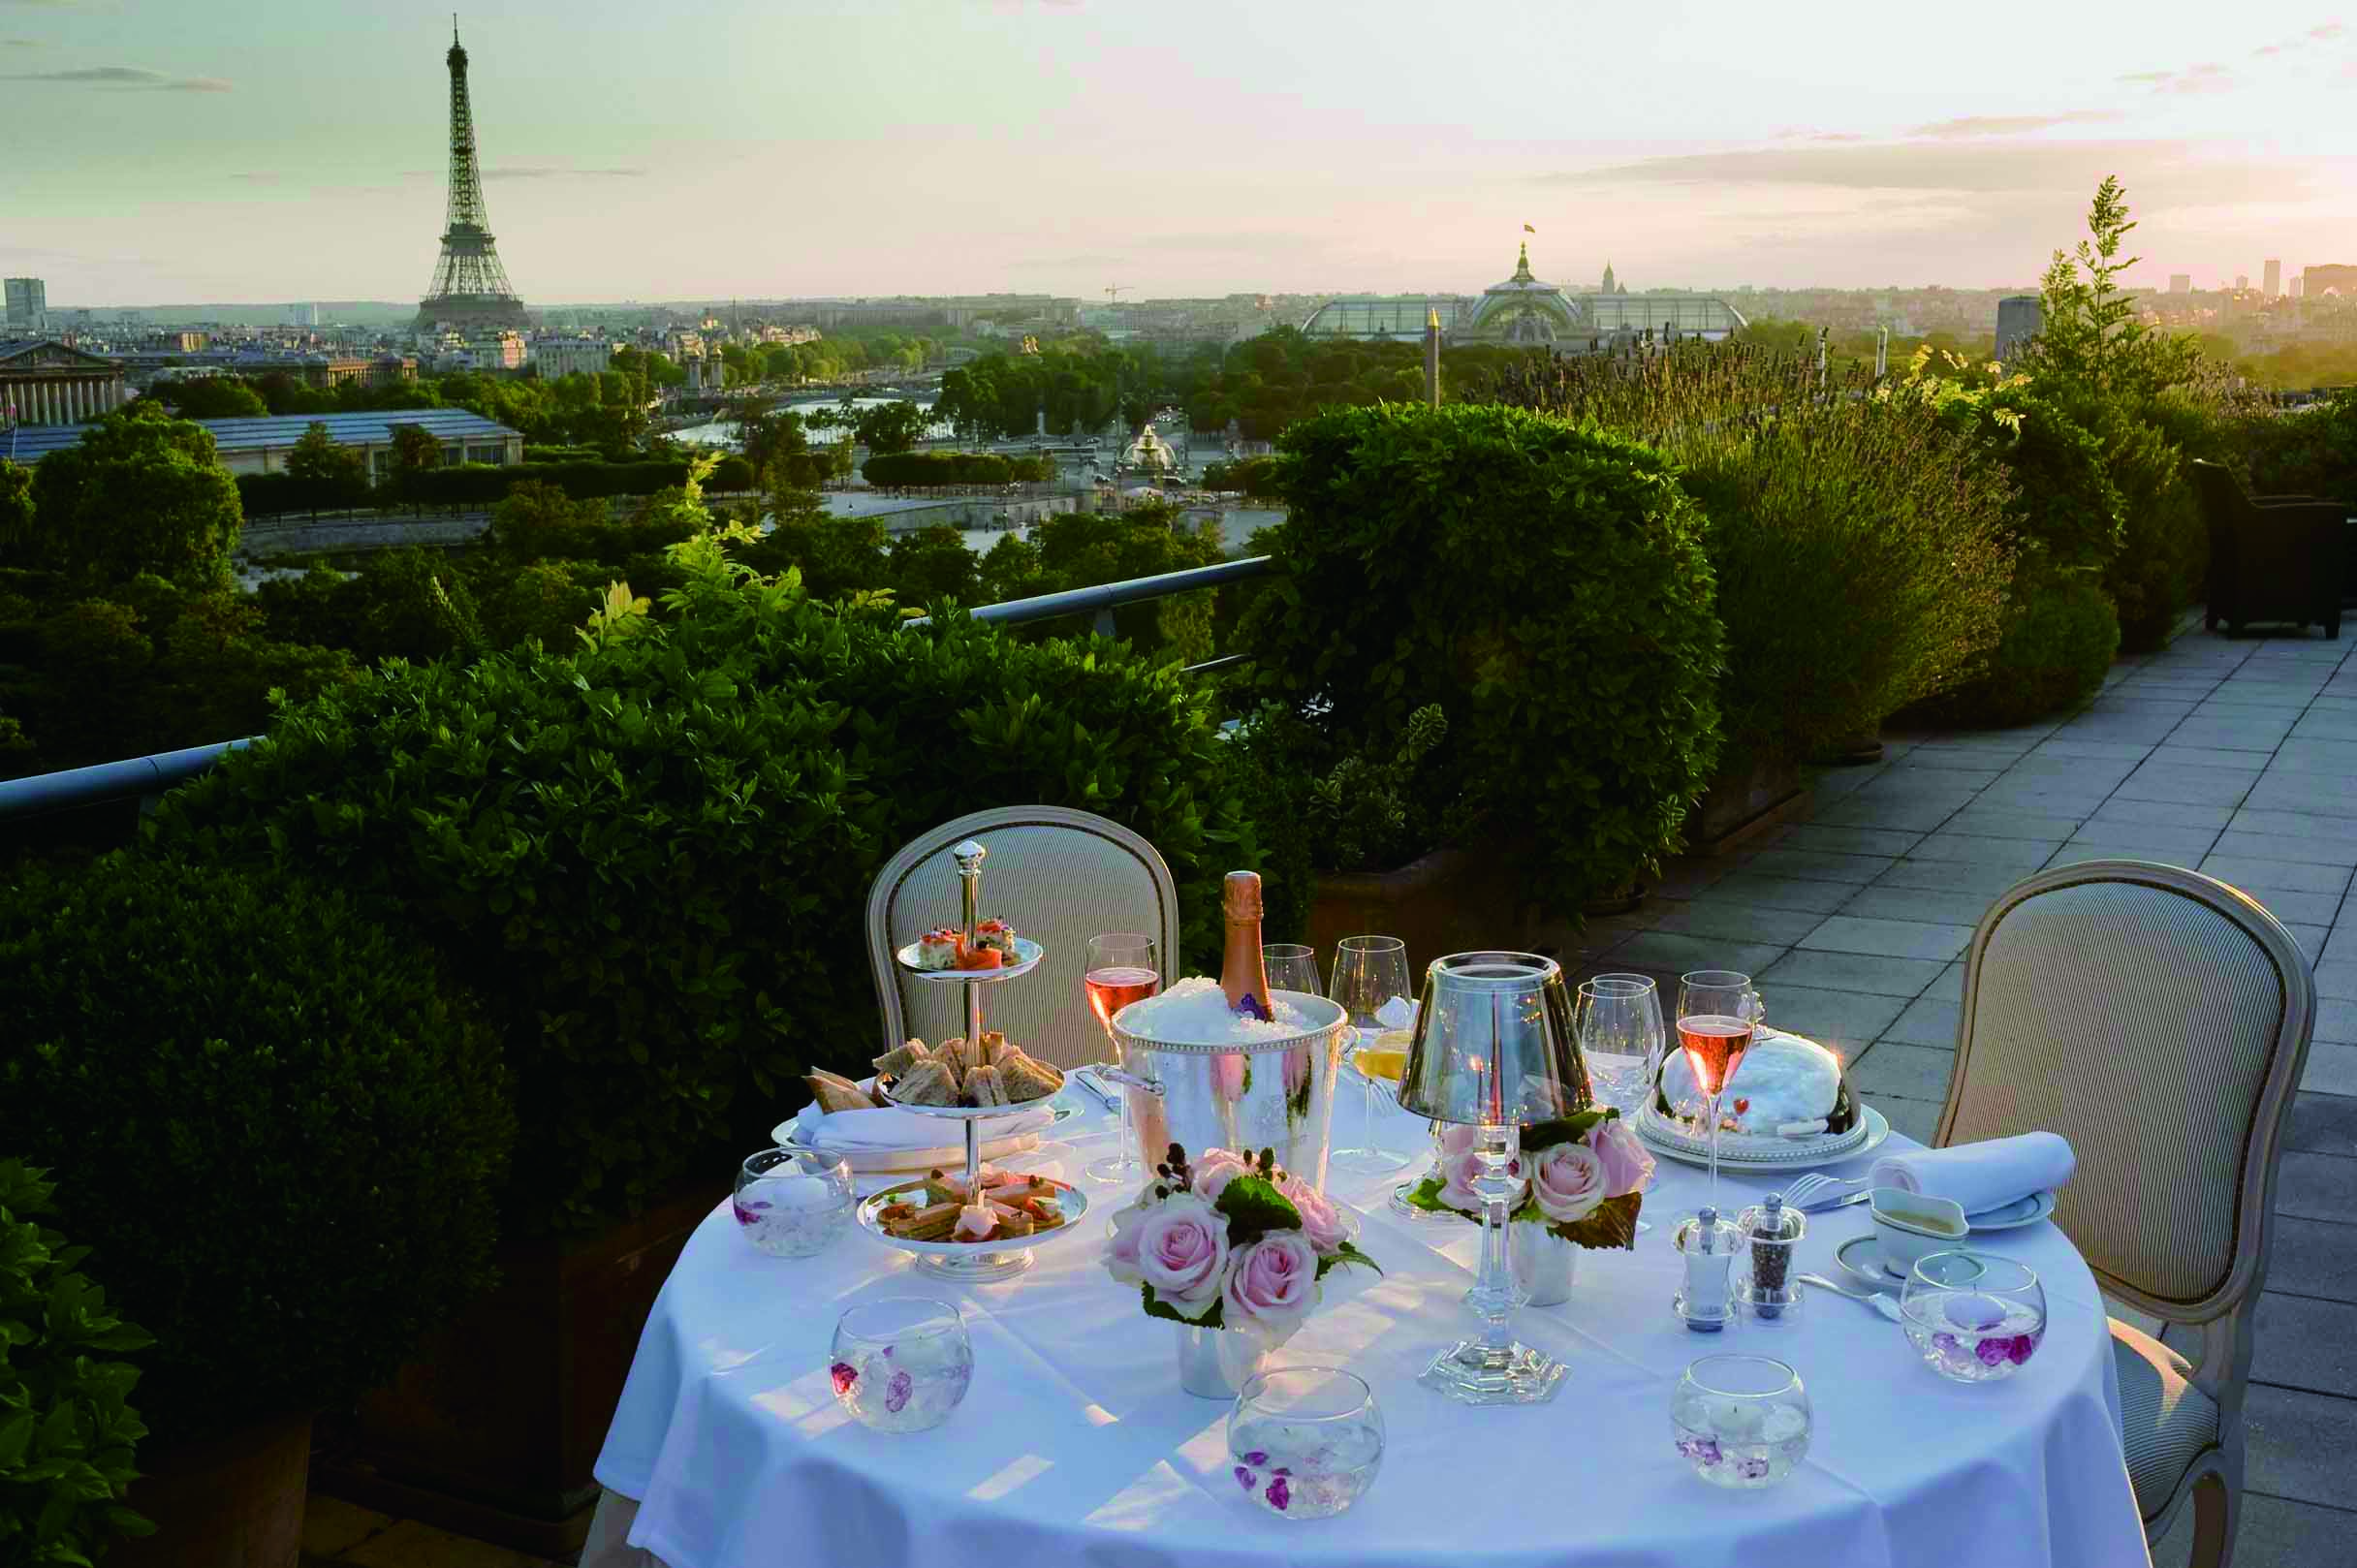 在 Le Meurice 的餐廳露臺上用餐，還能就近欣賞到杜樂麗花園與巴黎鐵塔等巴黎地標景點。